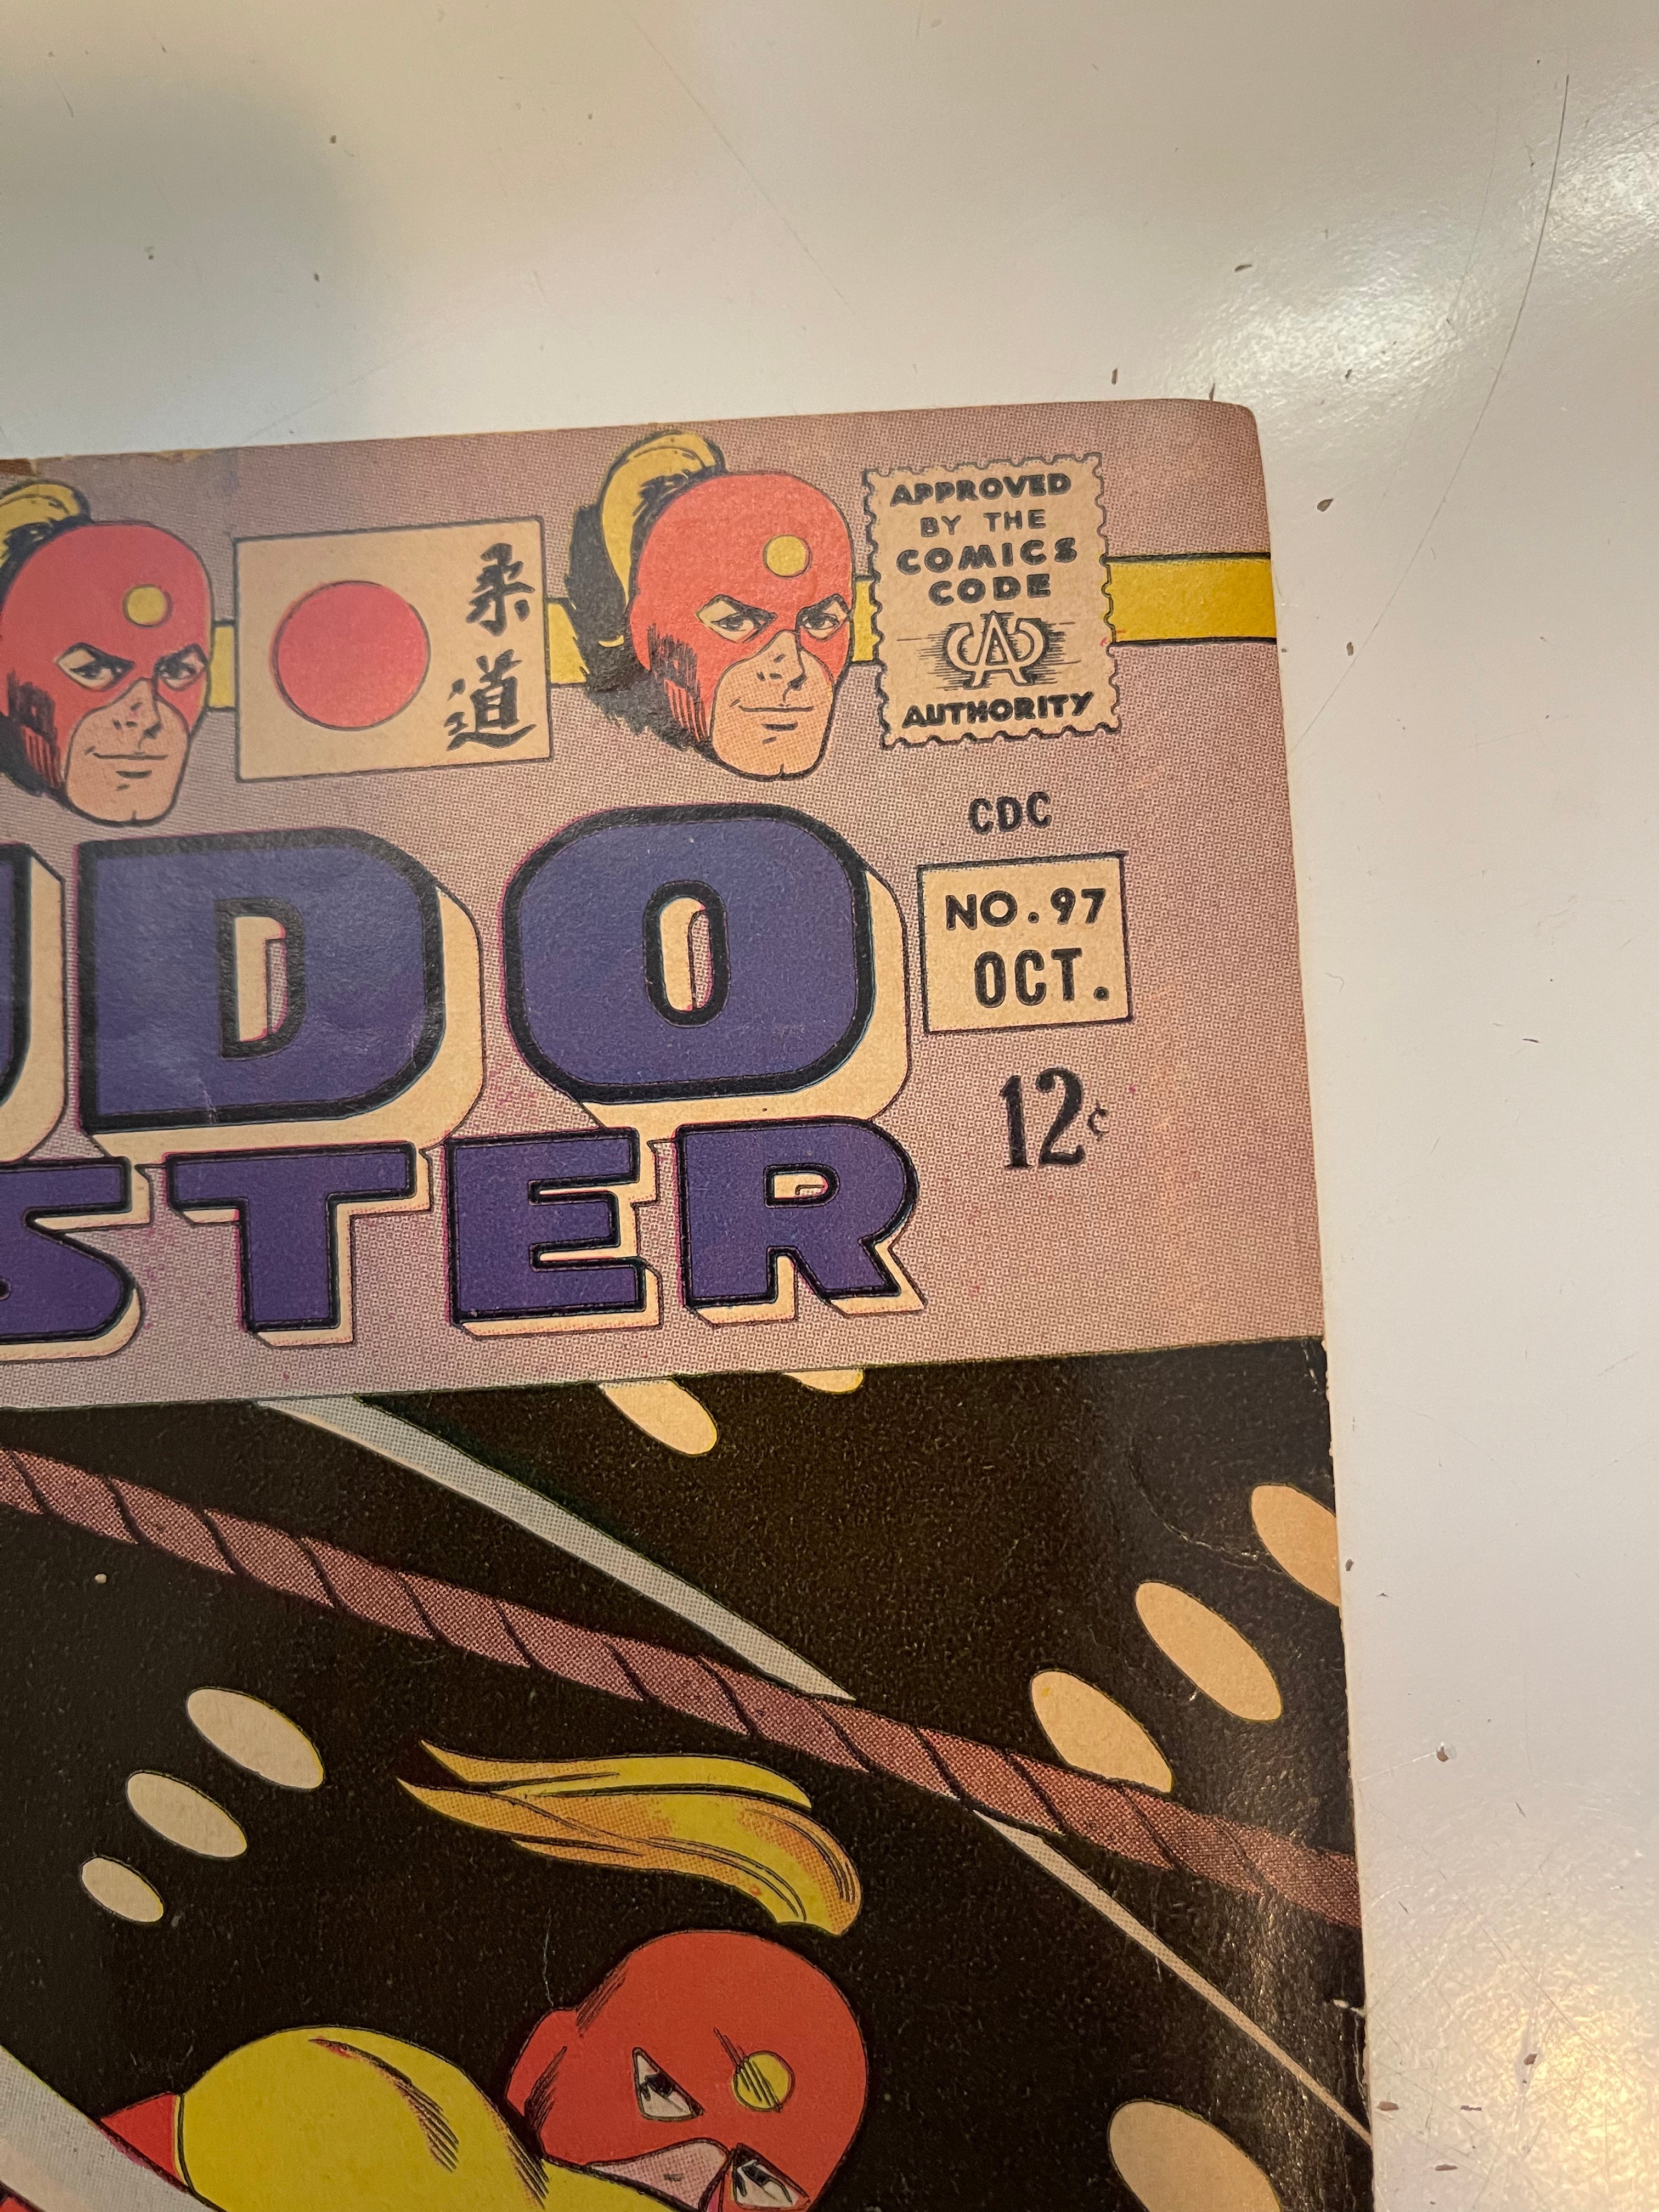 Judo Masters #96 Vf condition comic book 1967